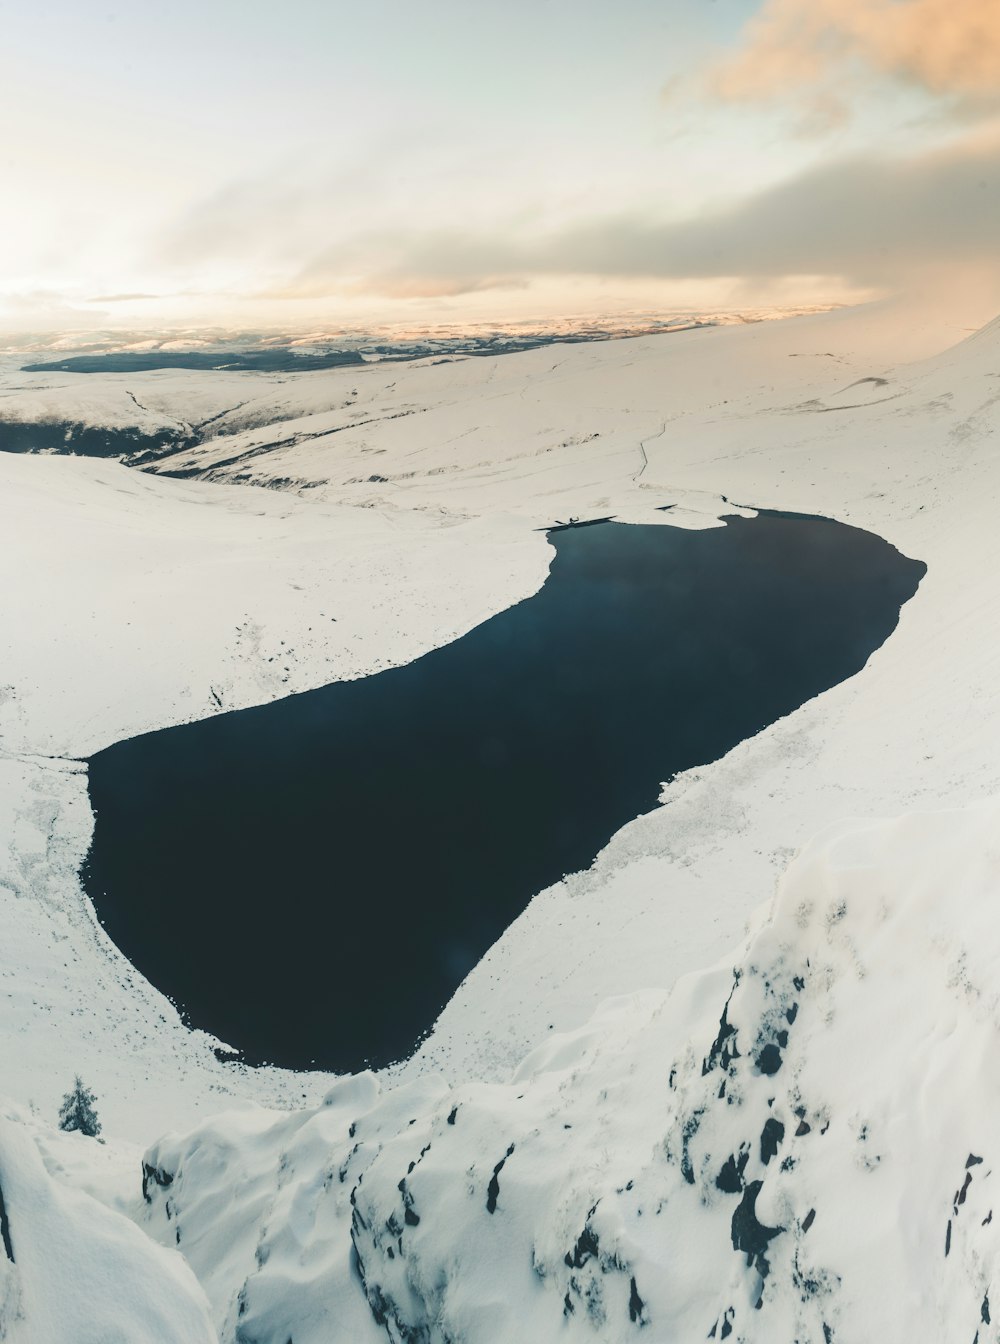 Cuerpo de agua tranquilo rodeado de terreno montañoso cubierto de nieve durante el día